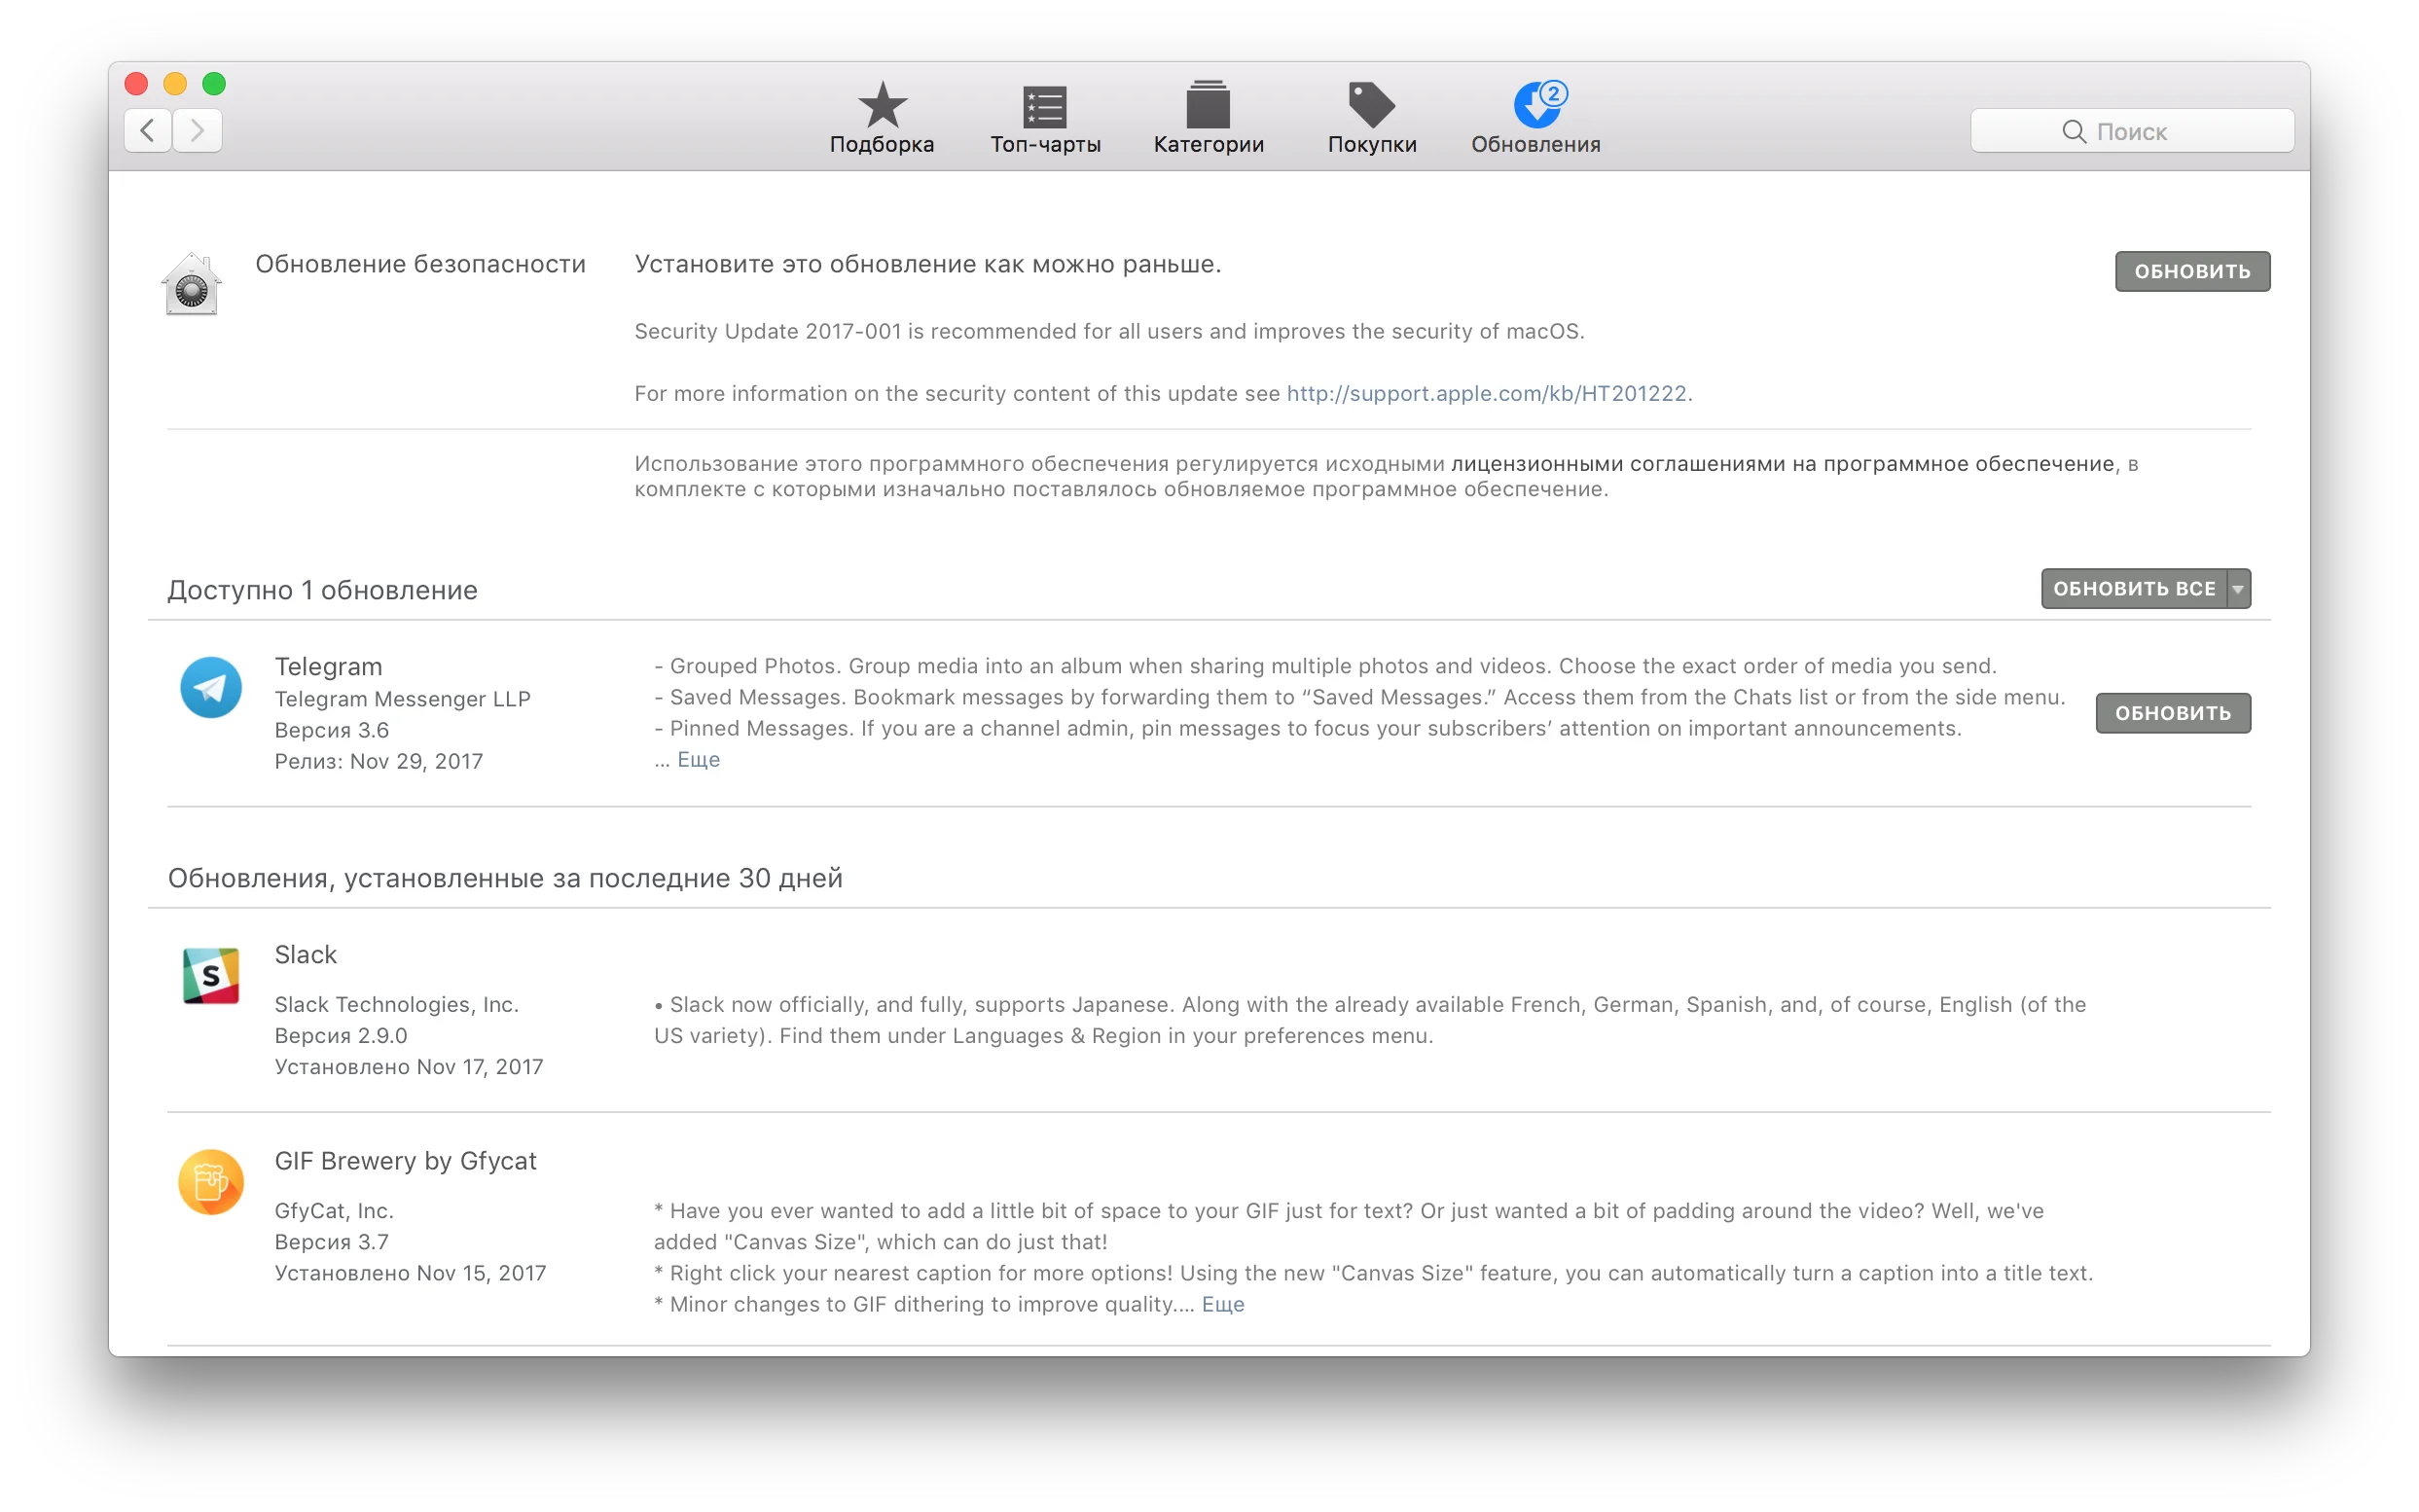 Оперативно! Apple выпустила обновление, которое устраняет серьезную уязвимость macOS  - фото 1